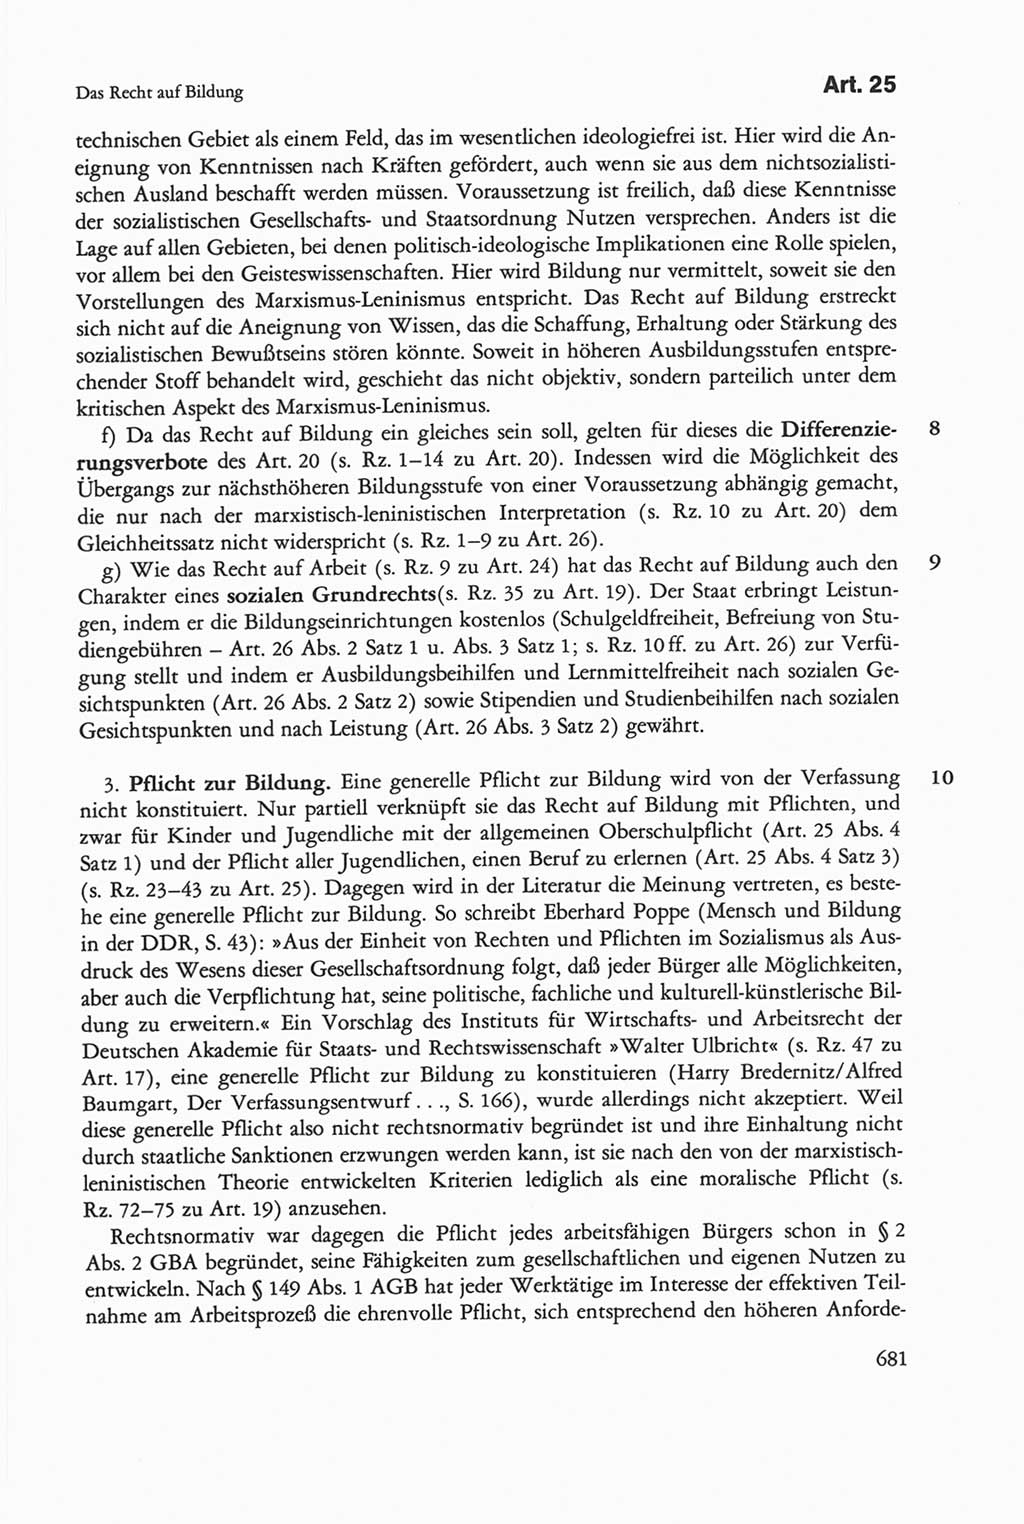 Die sozialistische Verfassung der Deutschen Demokratischen Republik (DDR), Kommentar 1982, Seite 681 (Soz. Verf. DDR Komm. 1982, S. 681)